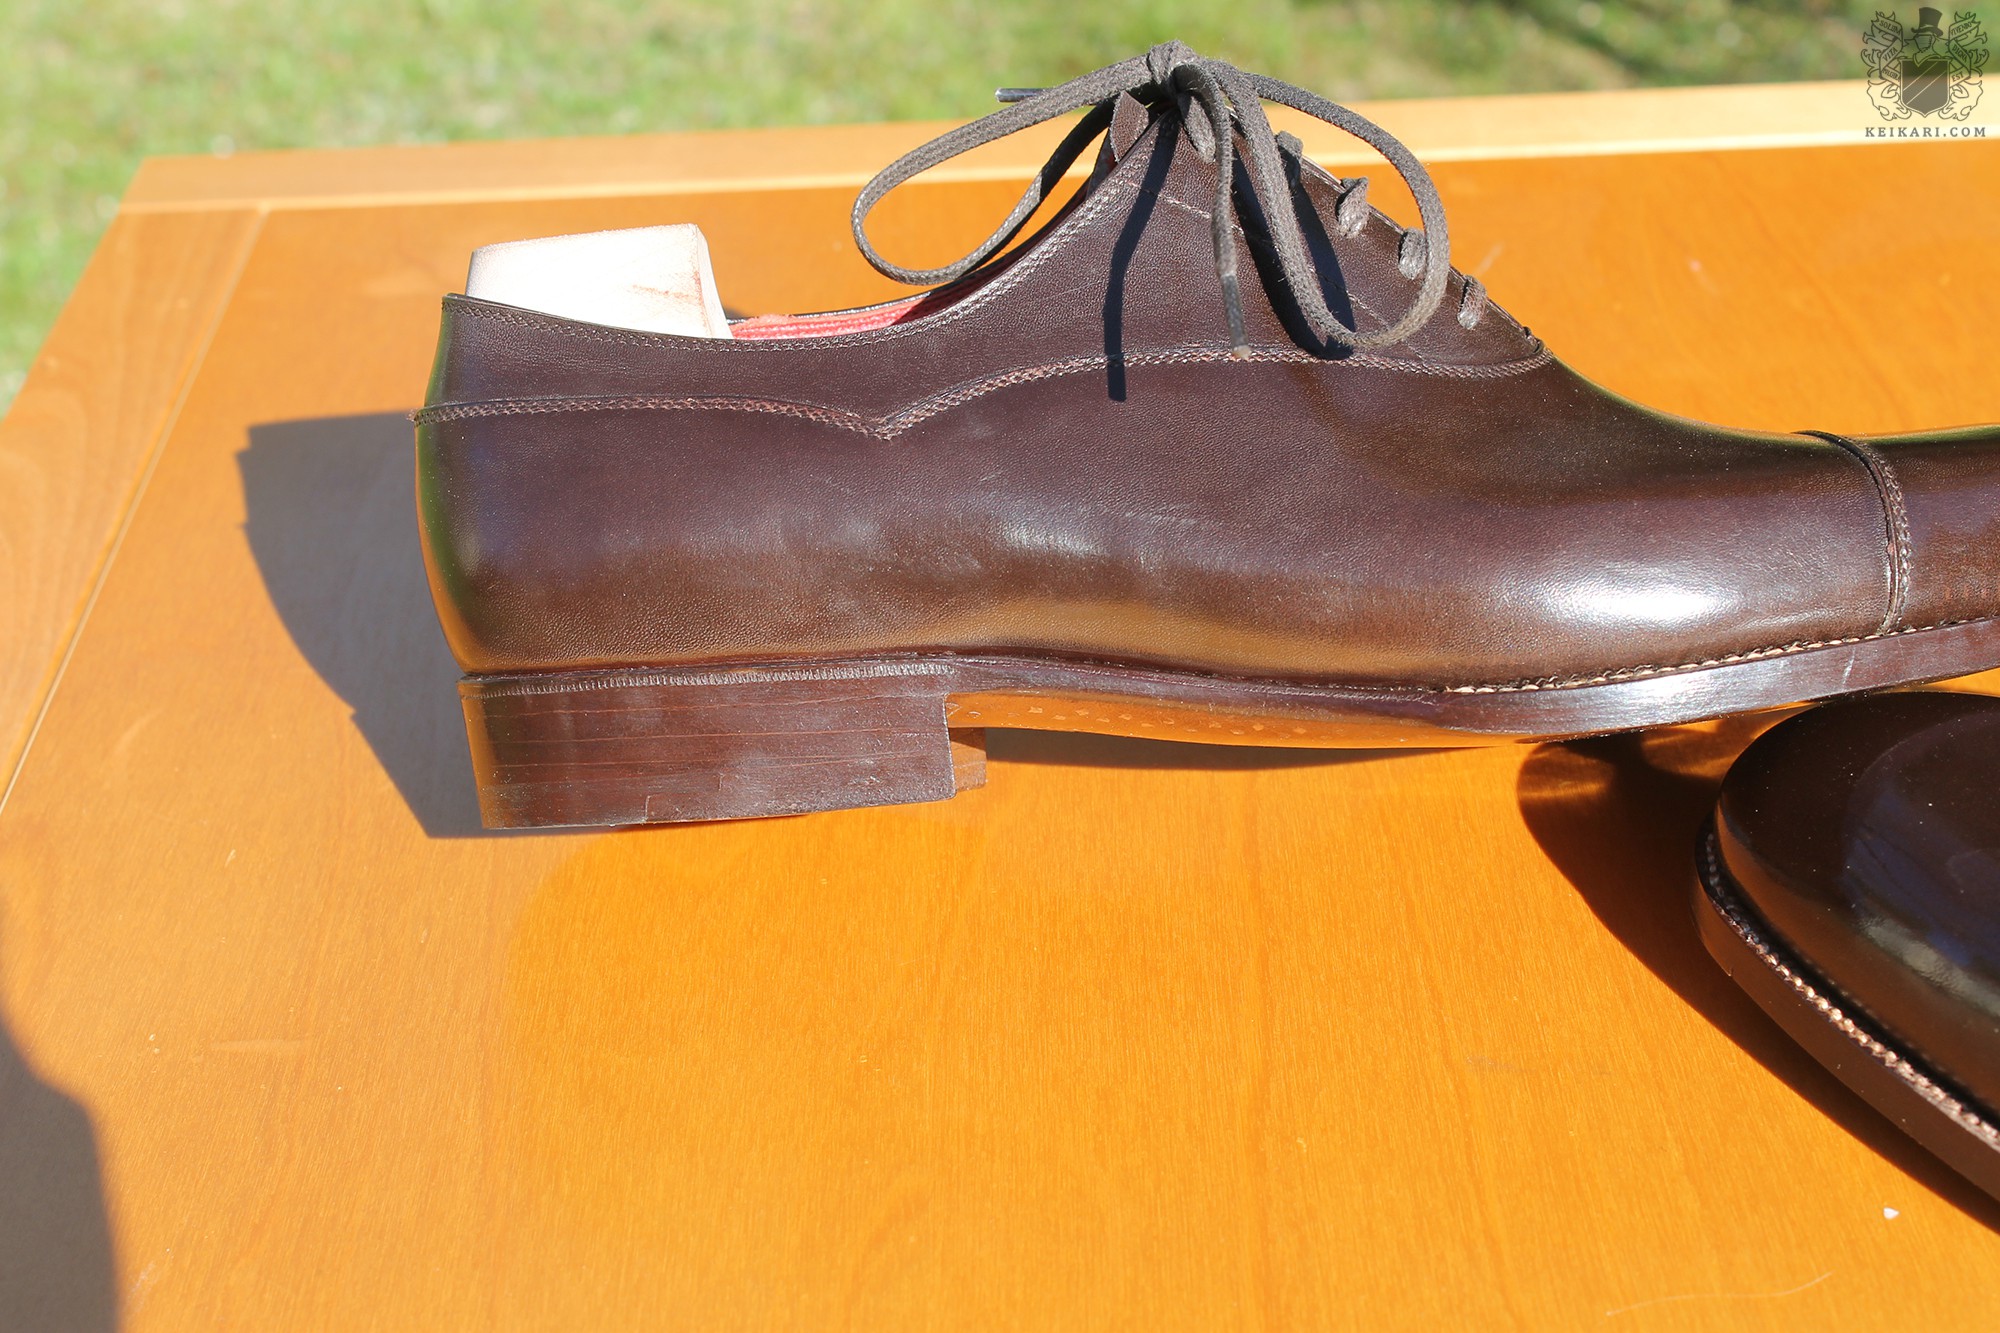 Anatomy_of_Saint_Crispin's_shoes_at_Keikari_dot_com12